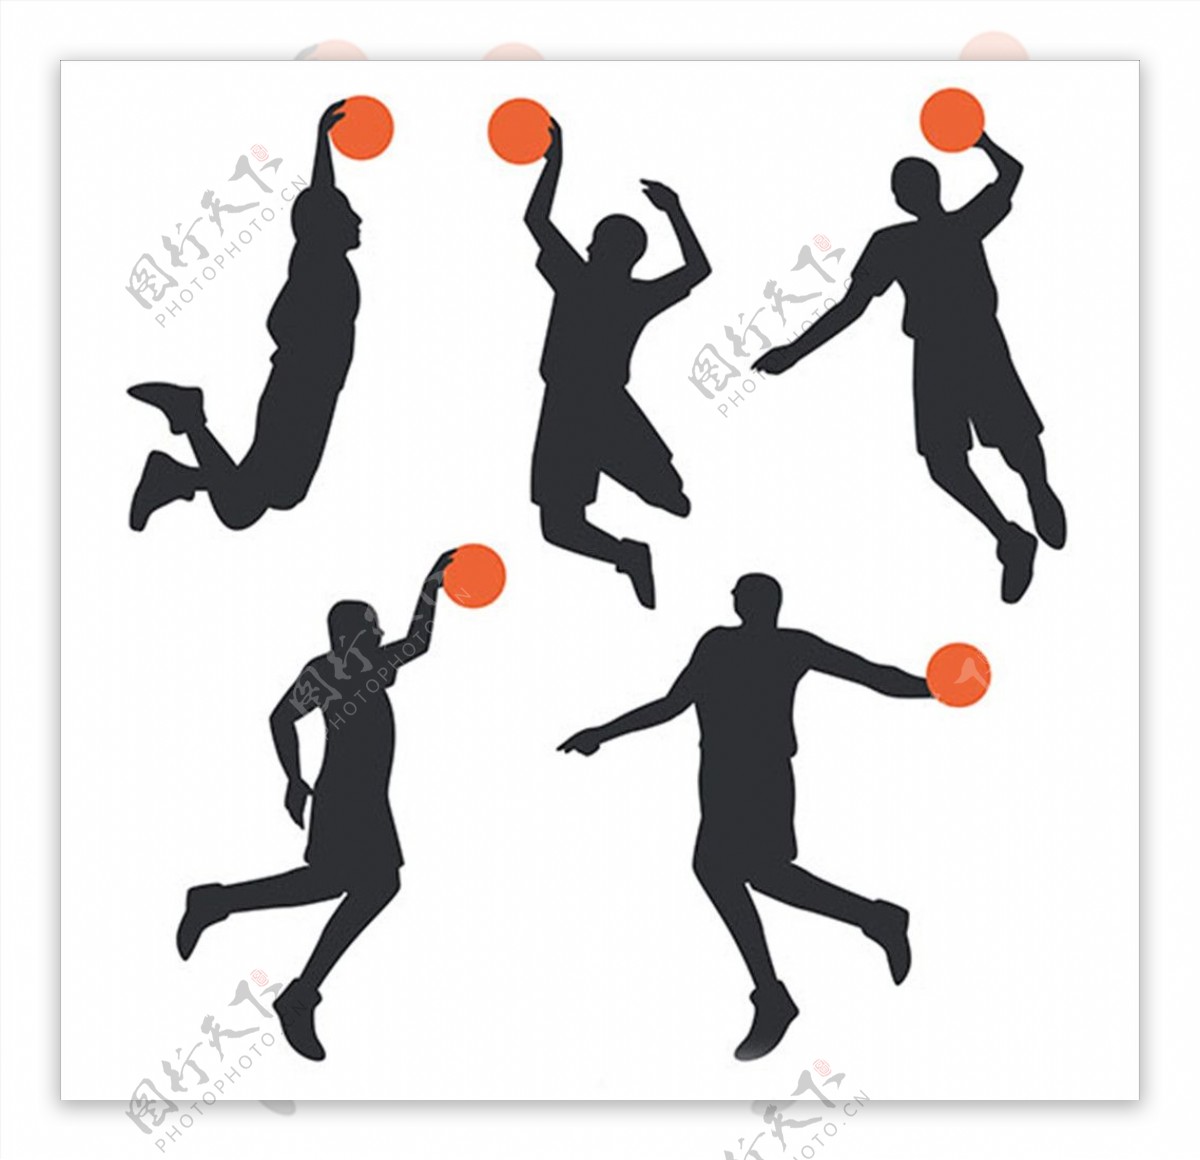 篮球比赛运动轮廓剪影